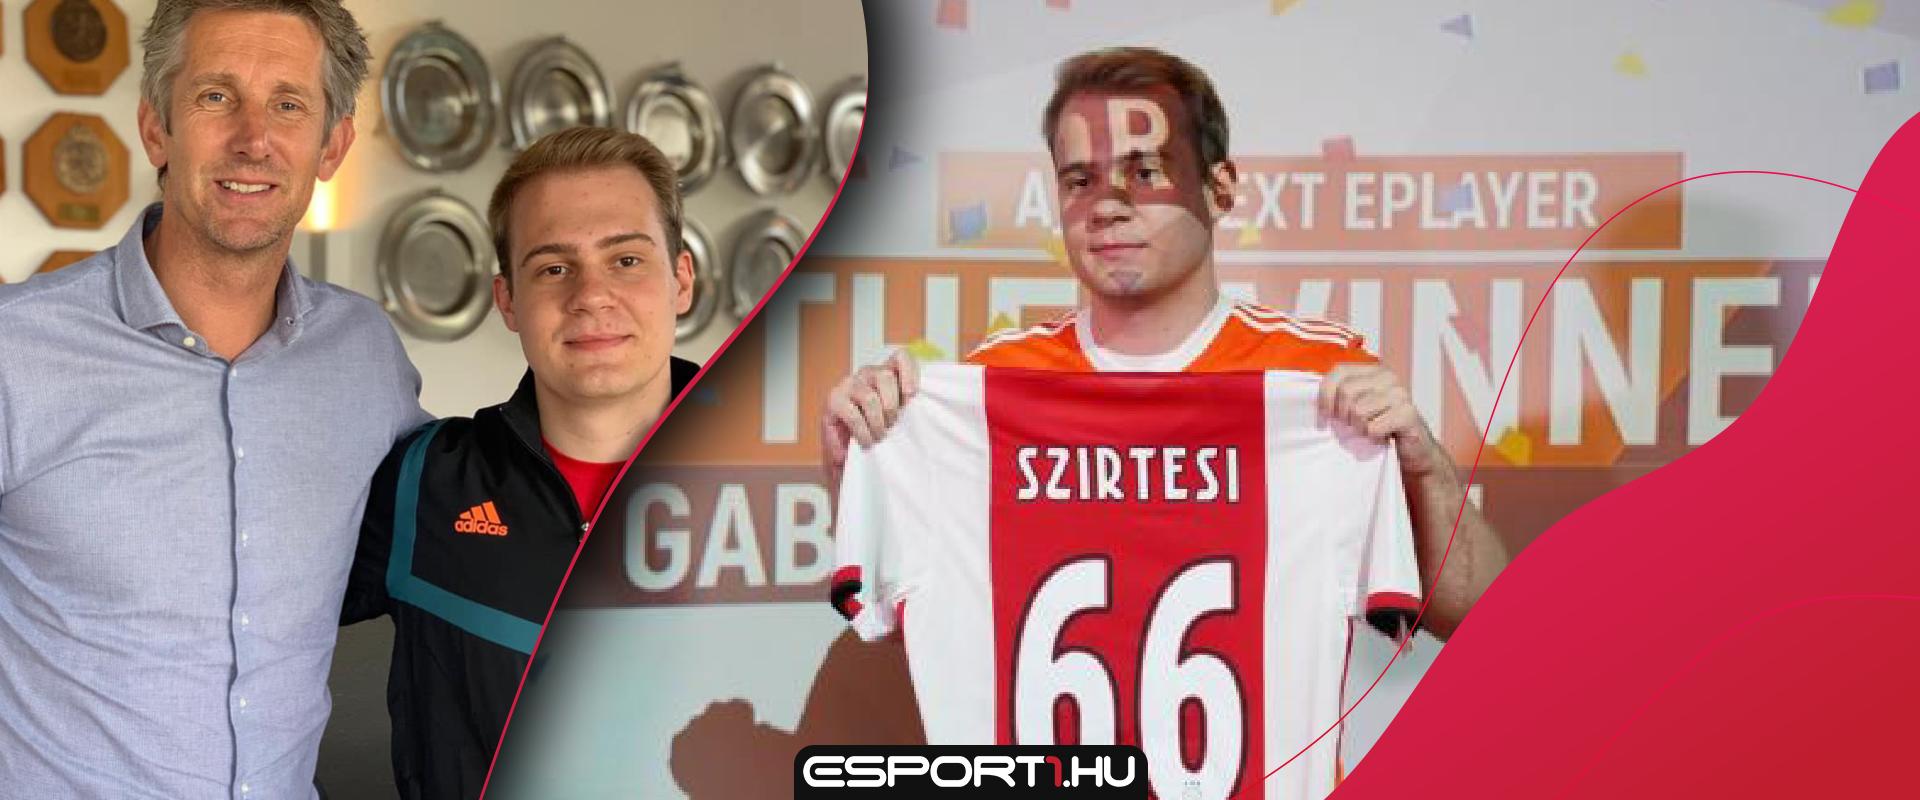 Boldog Születésnapot az Ajax magyar FIFA játékosának, Gabinhonak!